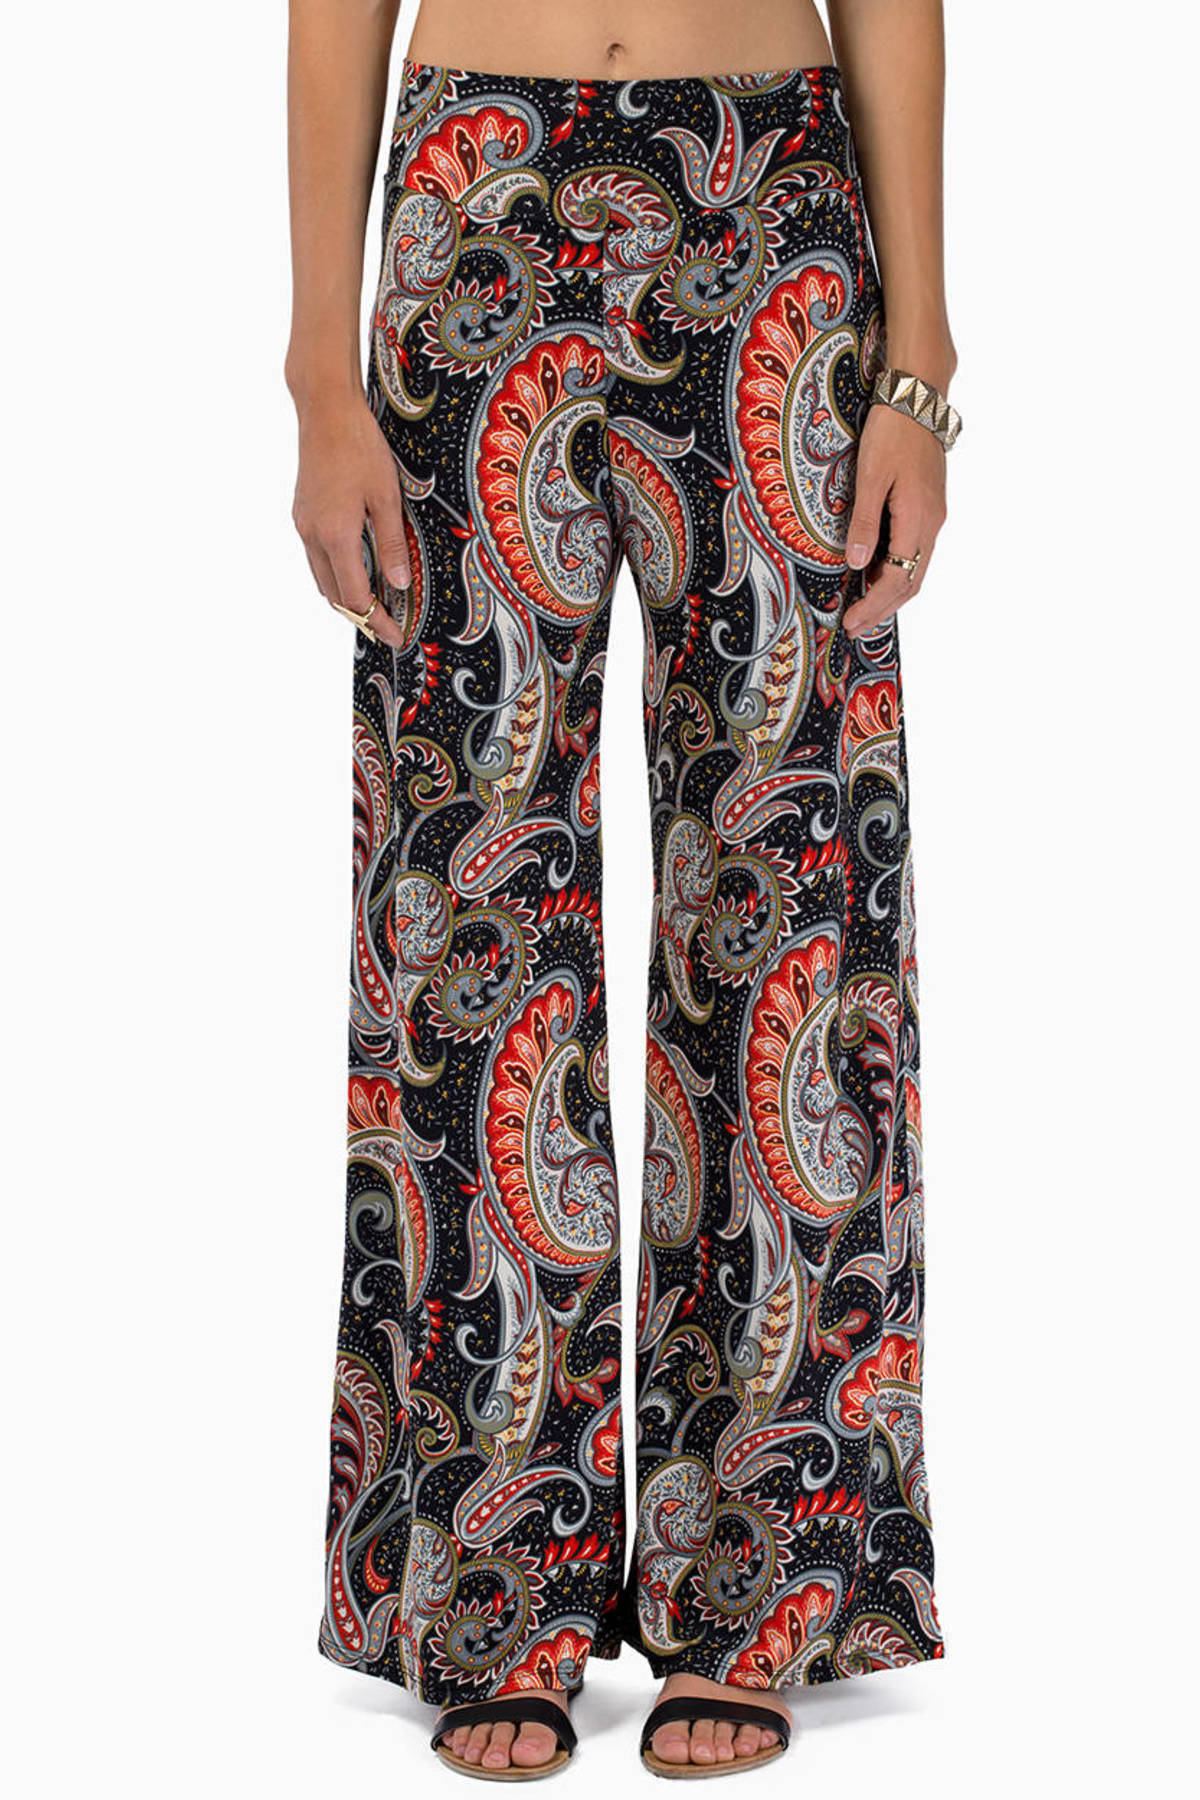 So Hippie Pants in Red Multi - $62 | Tobi US